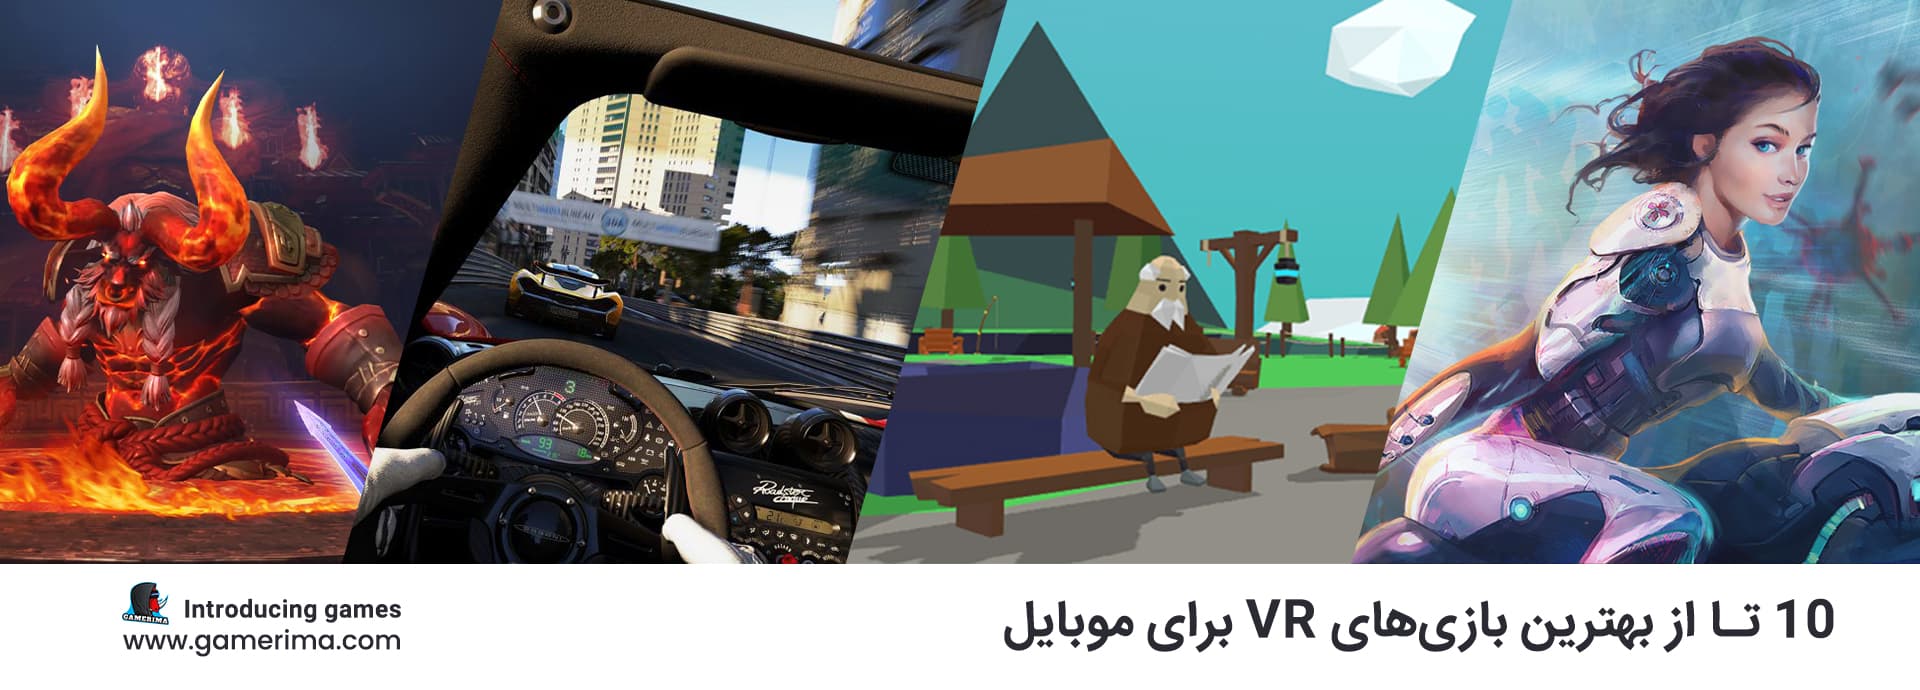 ۱۰ تا از بهترین بازی های VR برای موبایل